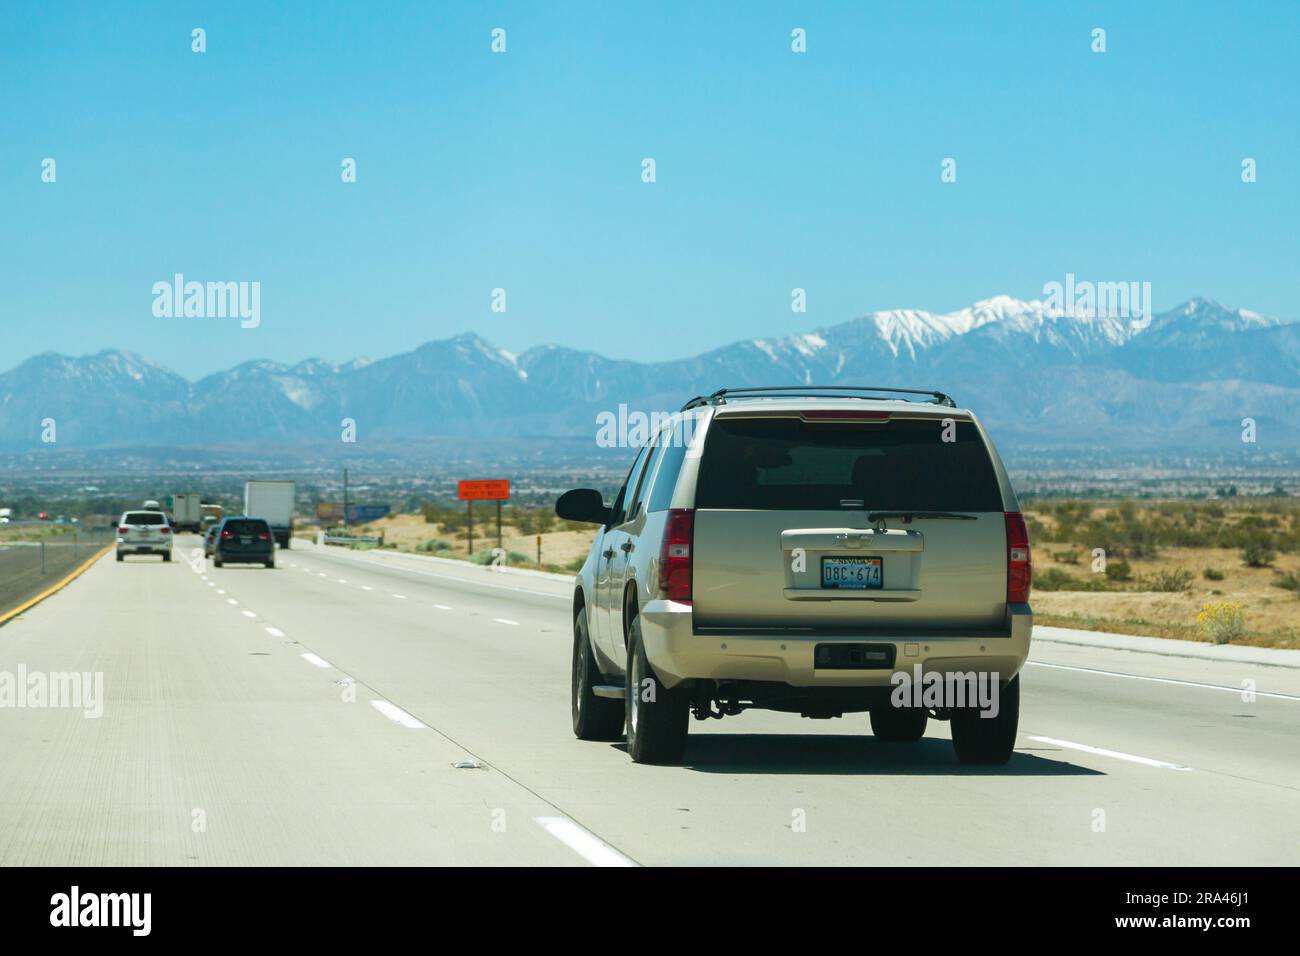 California, USA - aprile 2017: Autostrada americana con auto. La strada si estende in lontananza sullo sfondo di montagne. Guida in auto lungo l'autostrada, vista posteriore Foto Stock